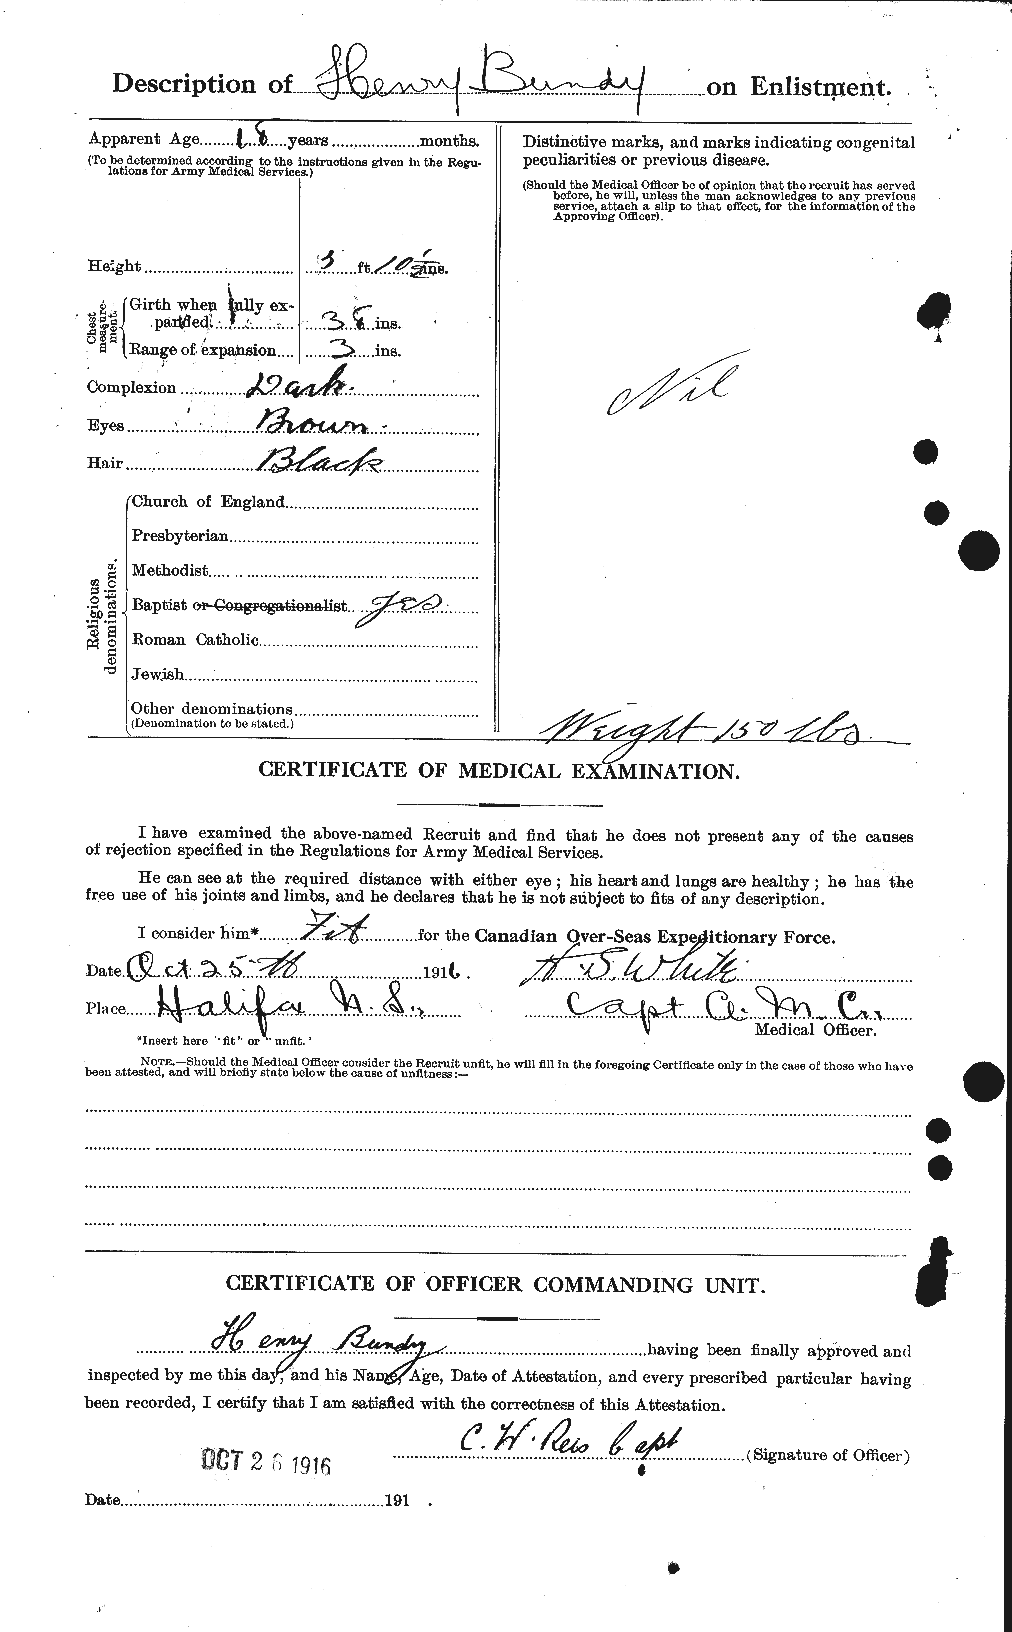 Dossiers du Personnel de la Première Guerre mondiale - CEC 270373b